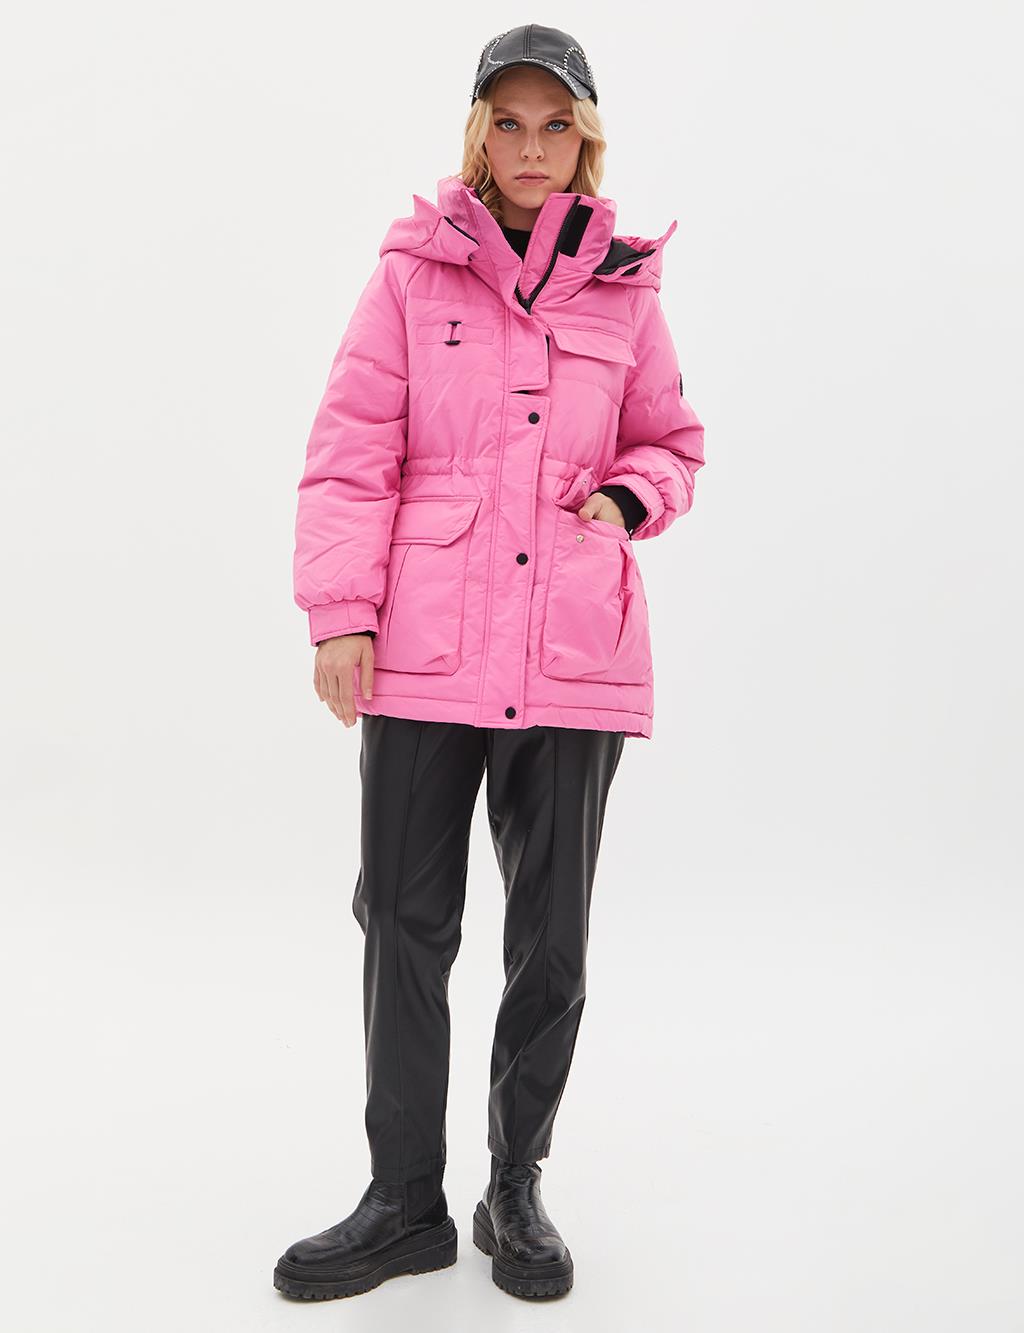 Пальто с гусиным пером и карманами, воротник-стойка, розовое Kayra